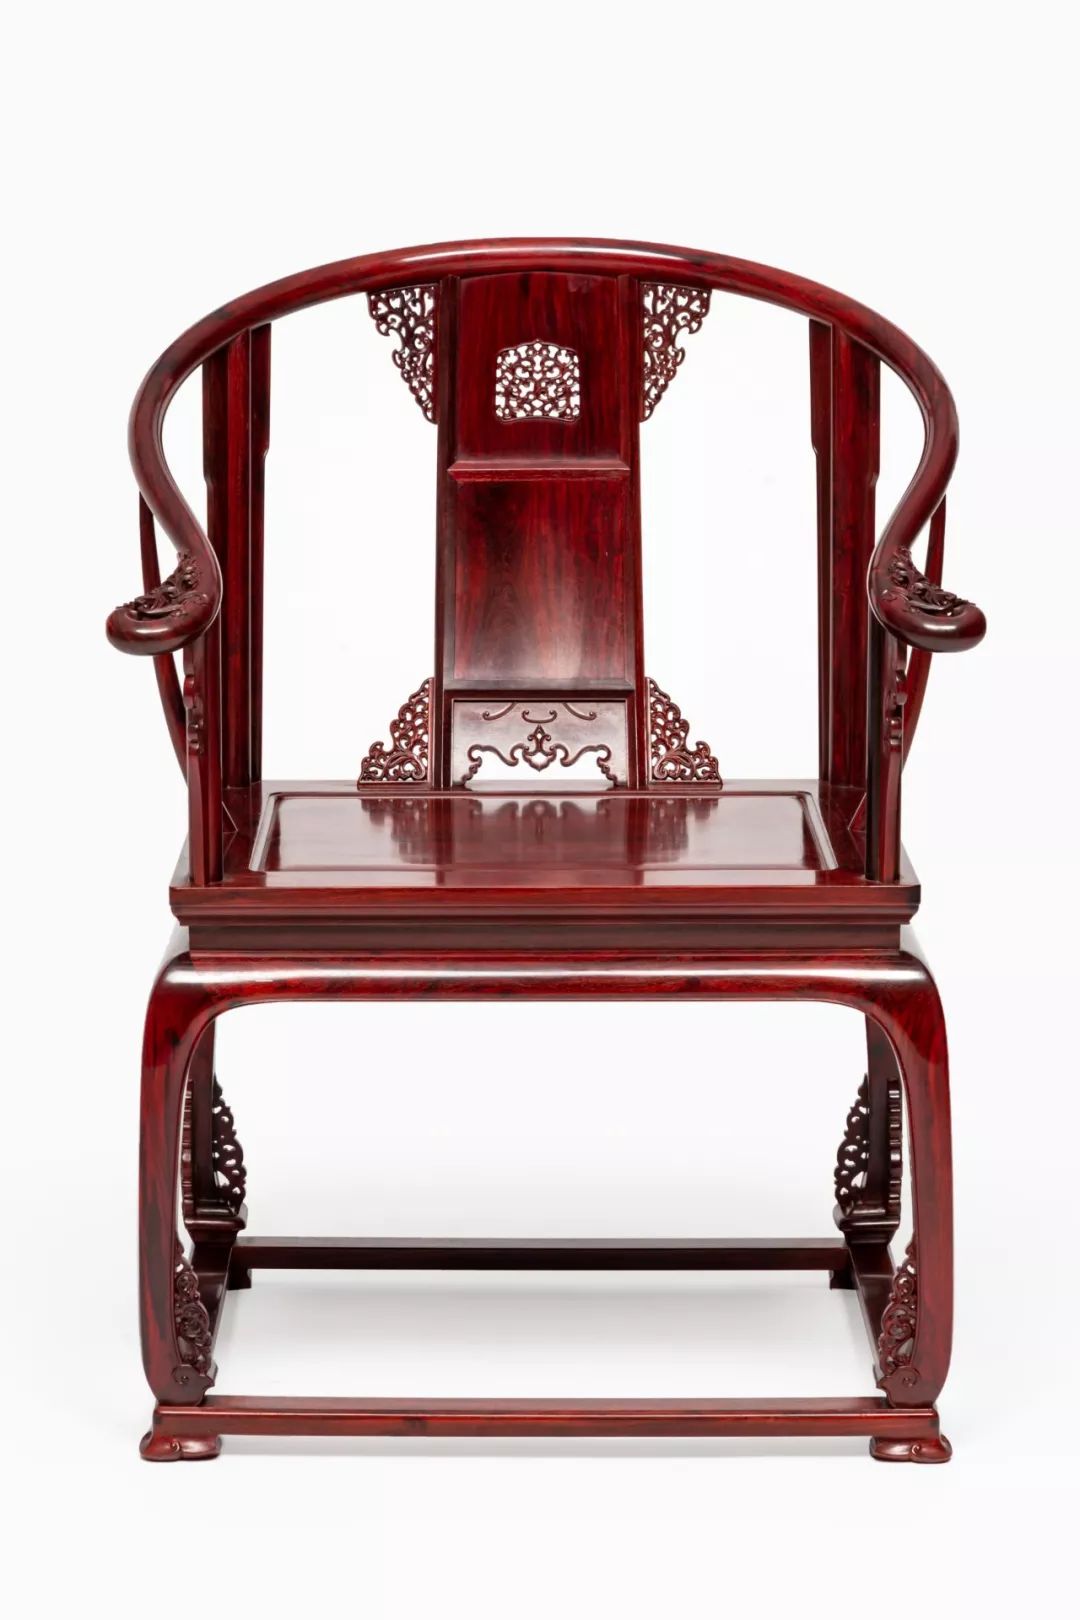 自从买了一套皇宫椅,家的整个空间品味都提高了